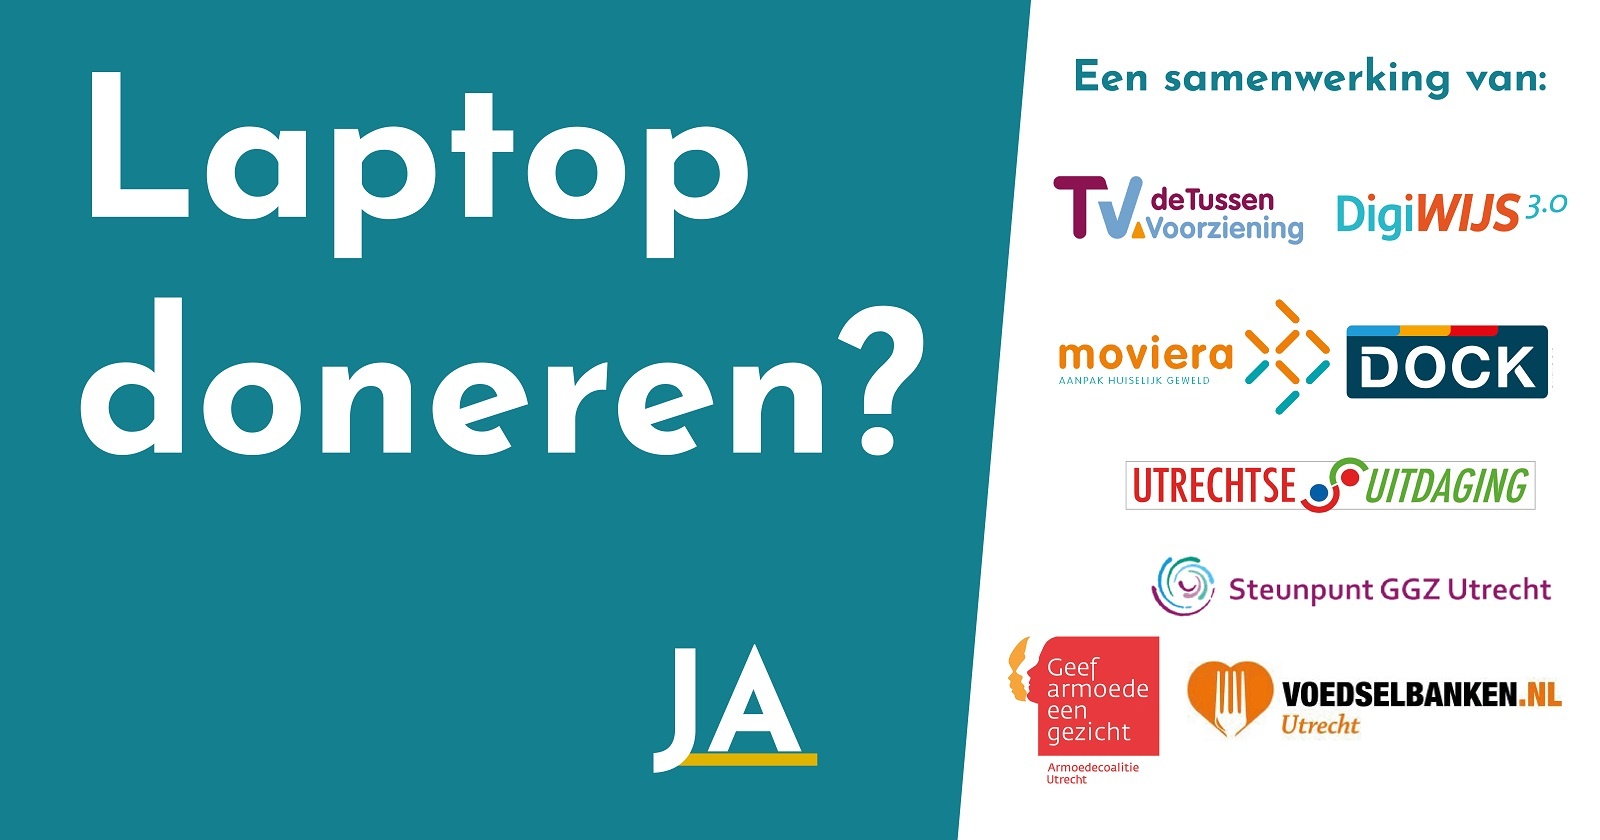 Je bekijkt nu Samenwerking in Utrecht voor digitale inclusie van mensen met kleine beurs